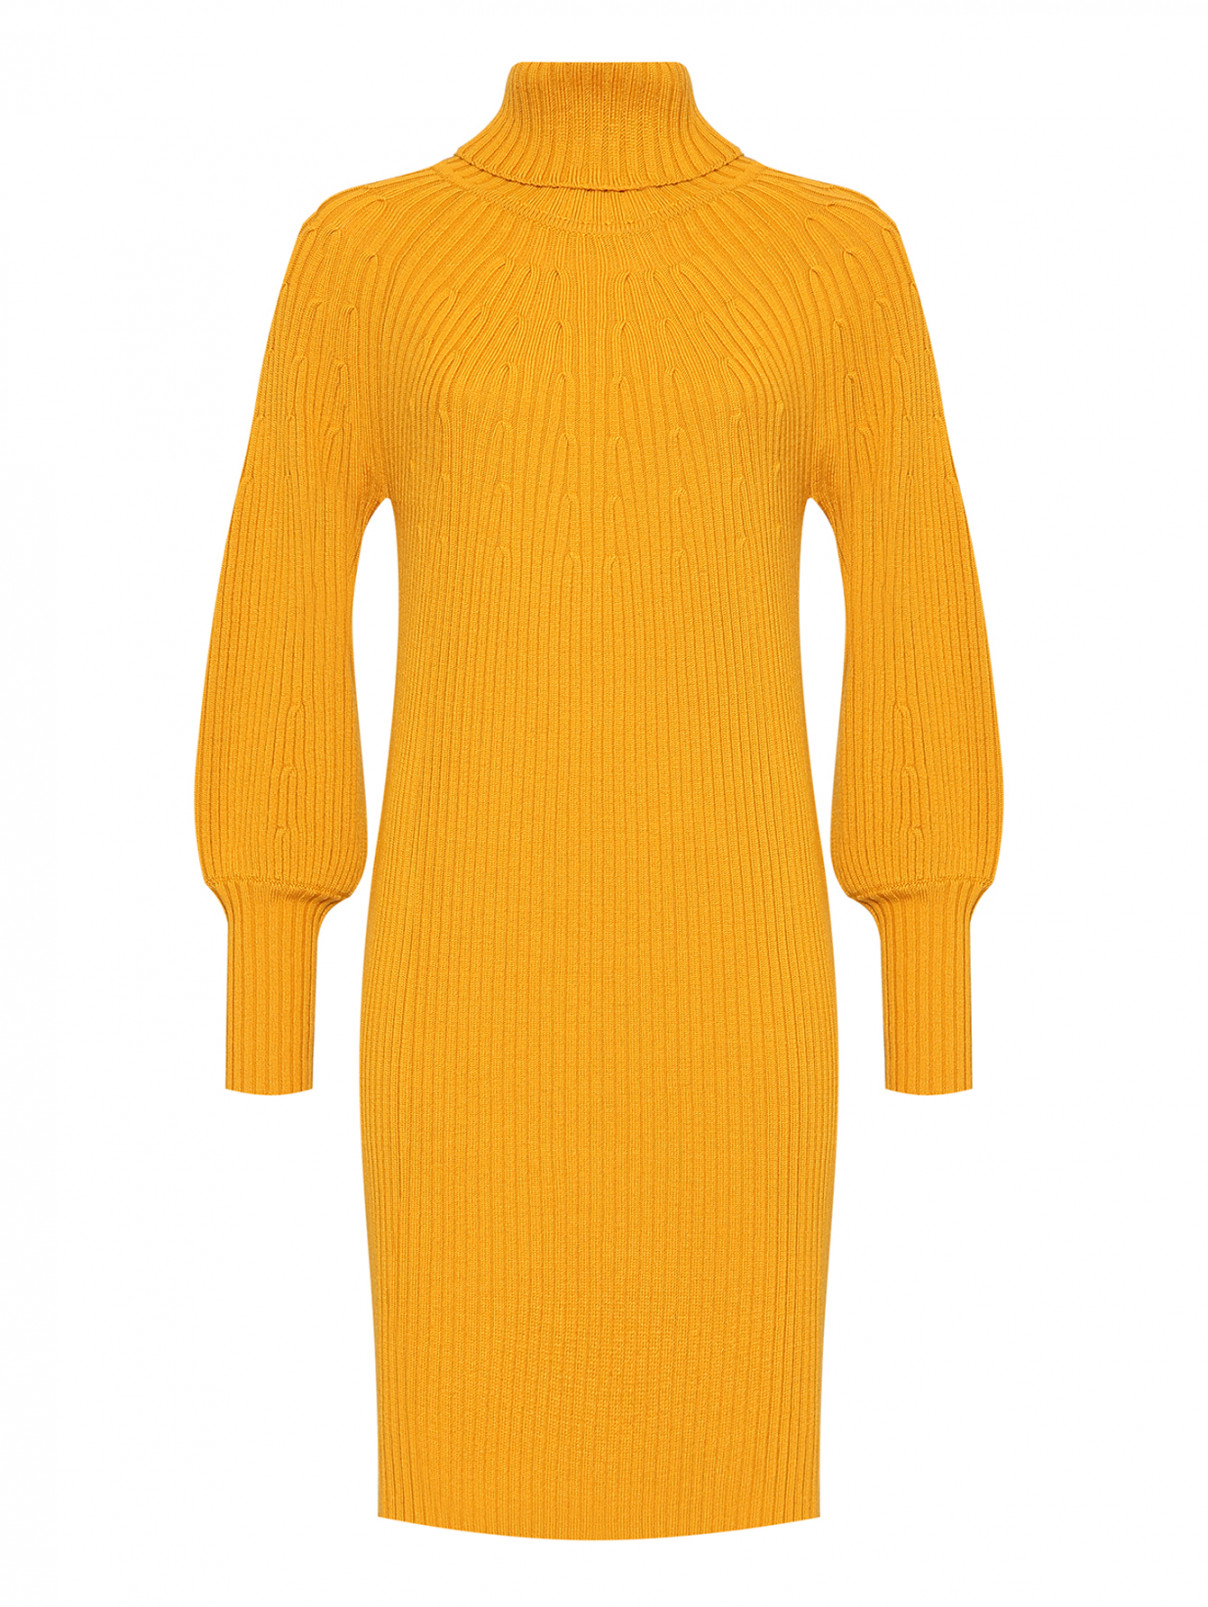 Платье-свитер из чистой шерсти Luisa Spagnoli  –  Общий вид  – Цвет:  Оранжевый